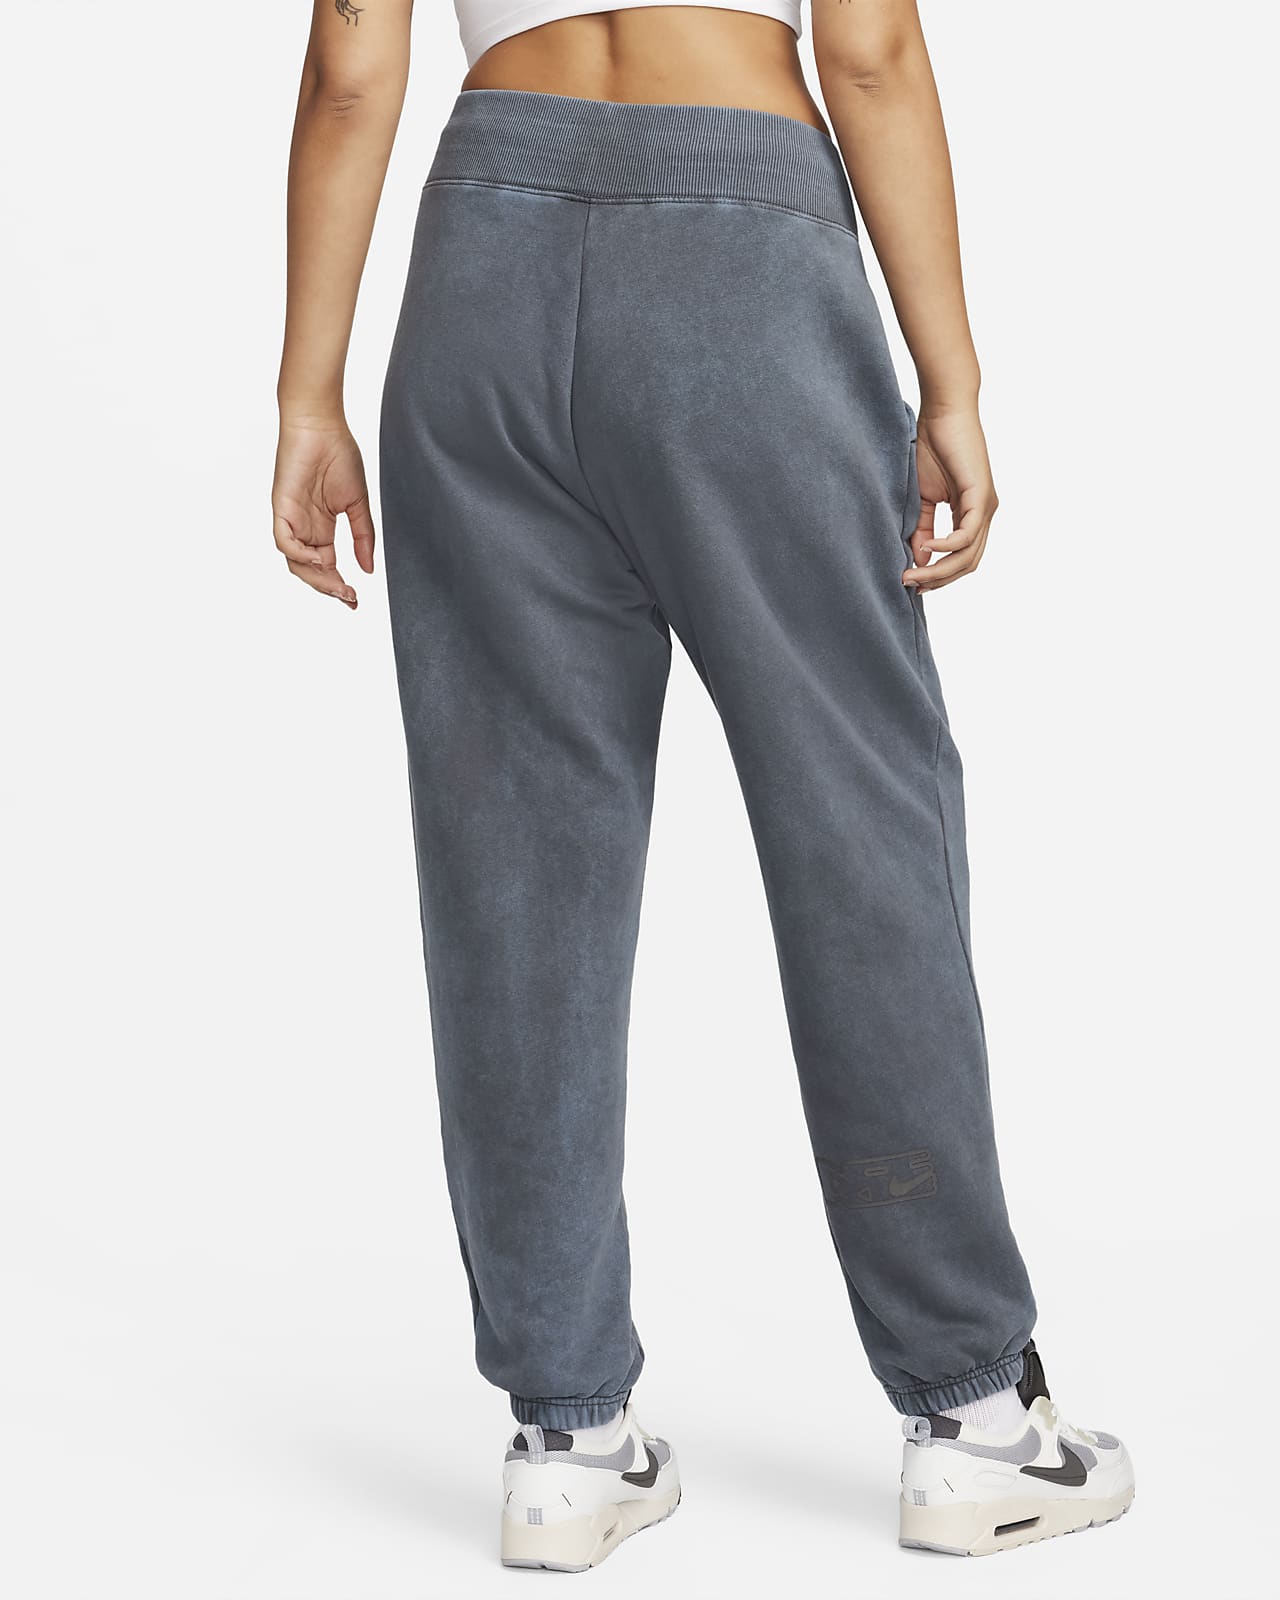 Nike Sportswear Phoenix Fleece Women's High-Waisted Pants.